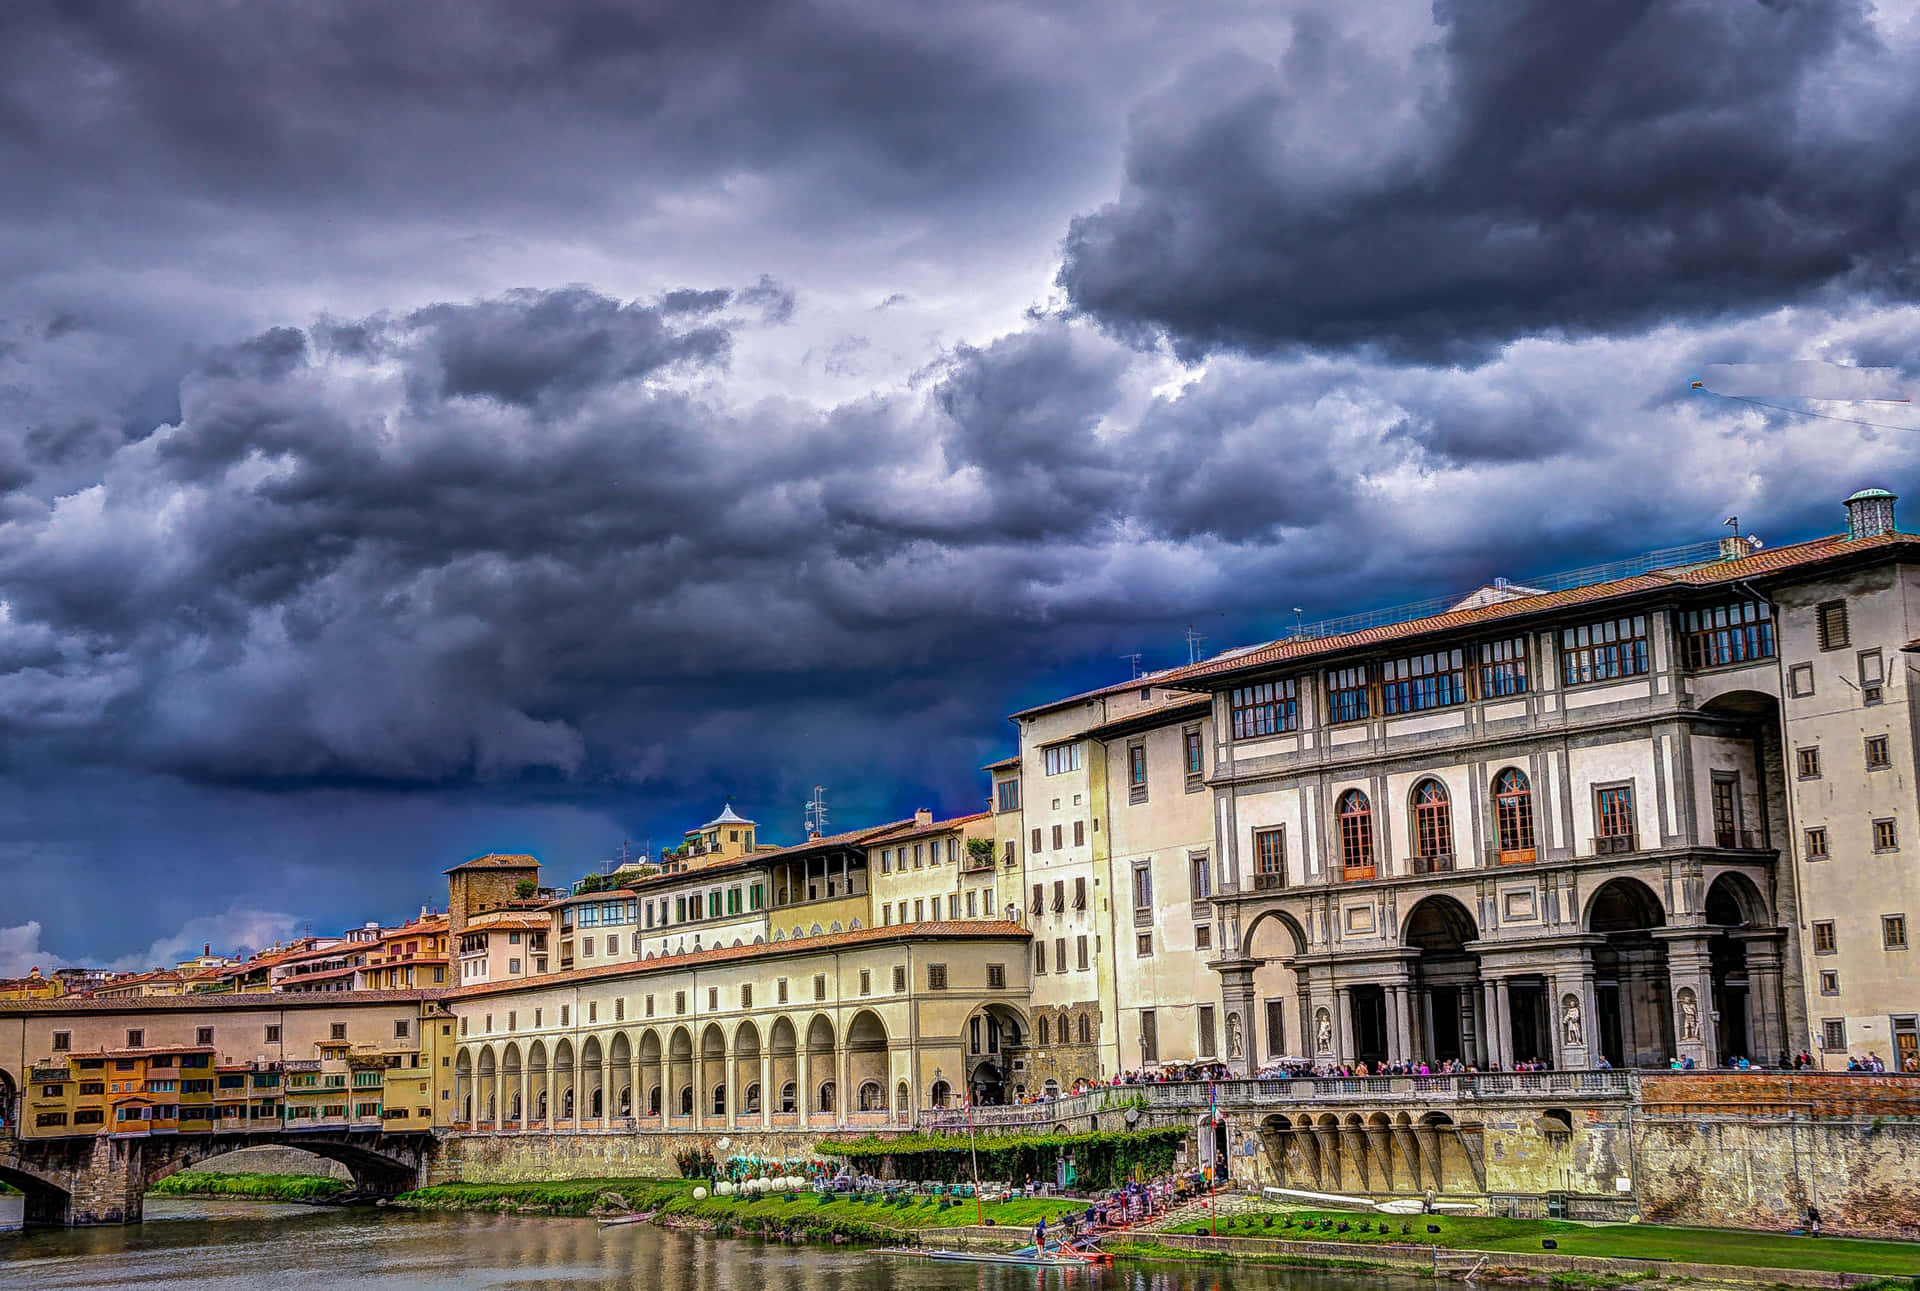 Besøg Florence Ponte Vecchio og nyd de brostensbelagte gader og puslespille agtige udsigter. Wallpaper